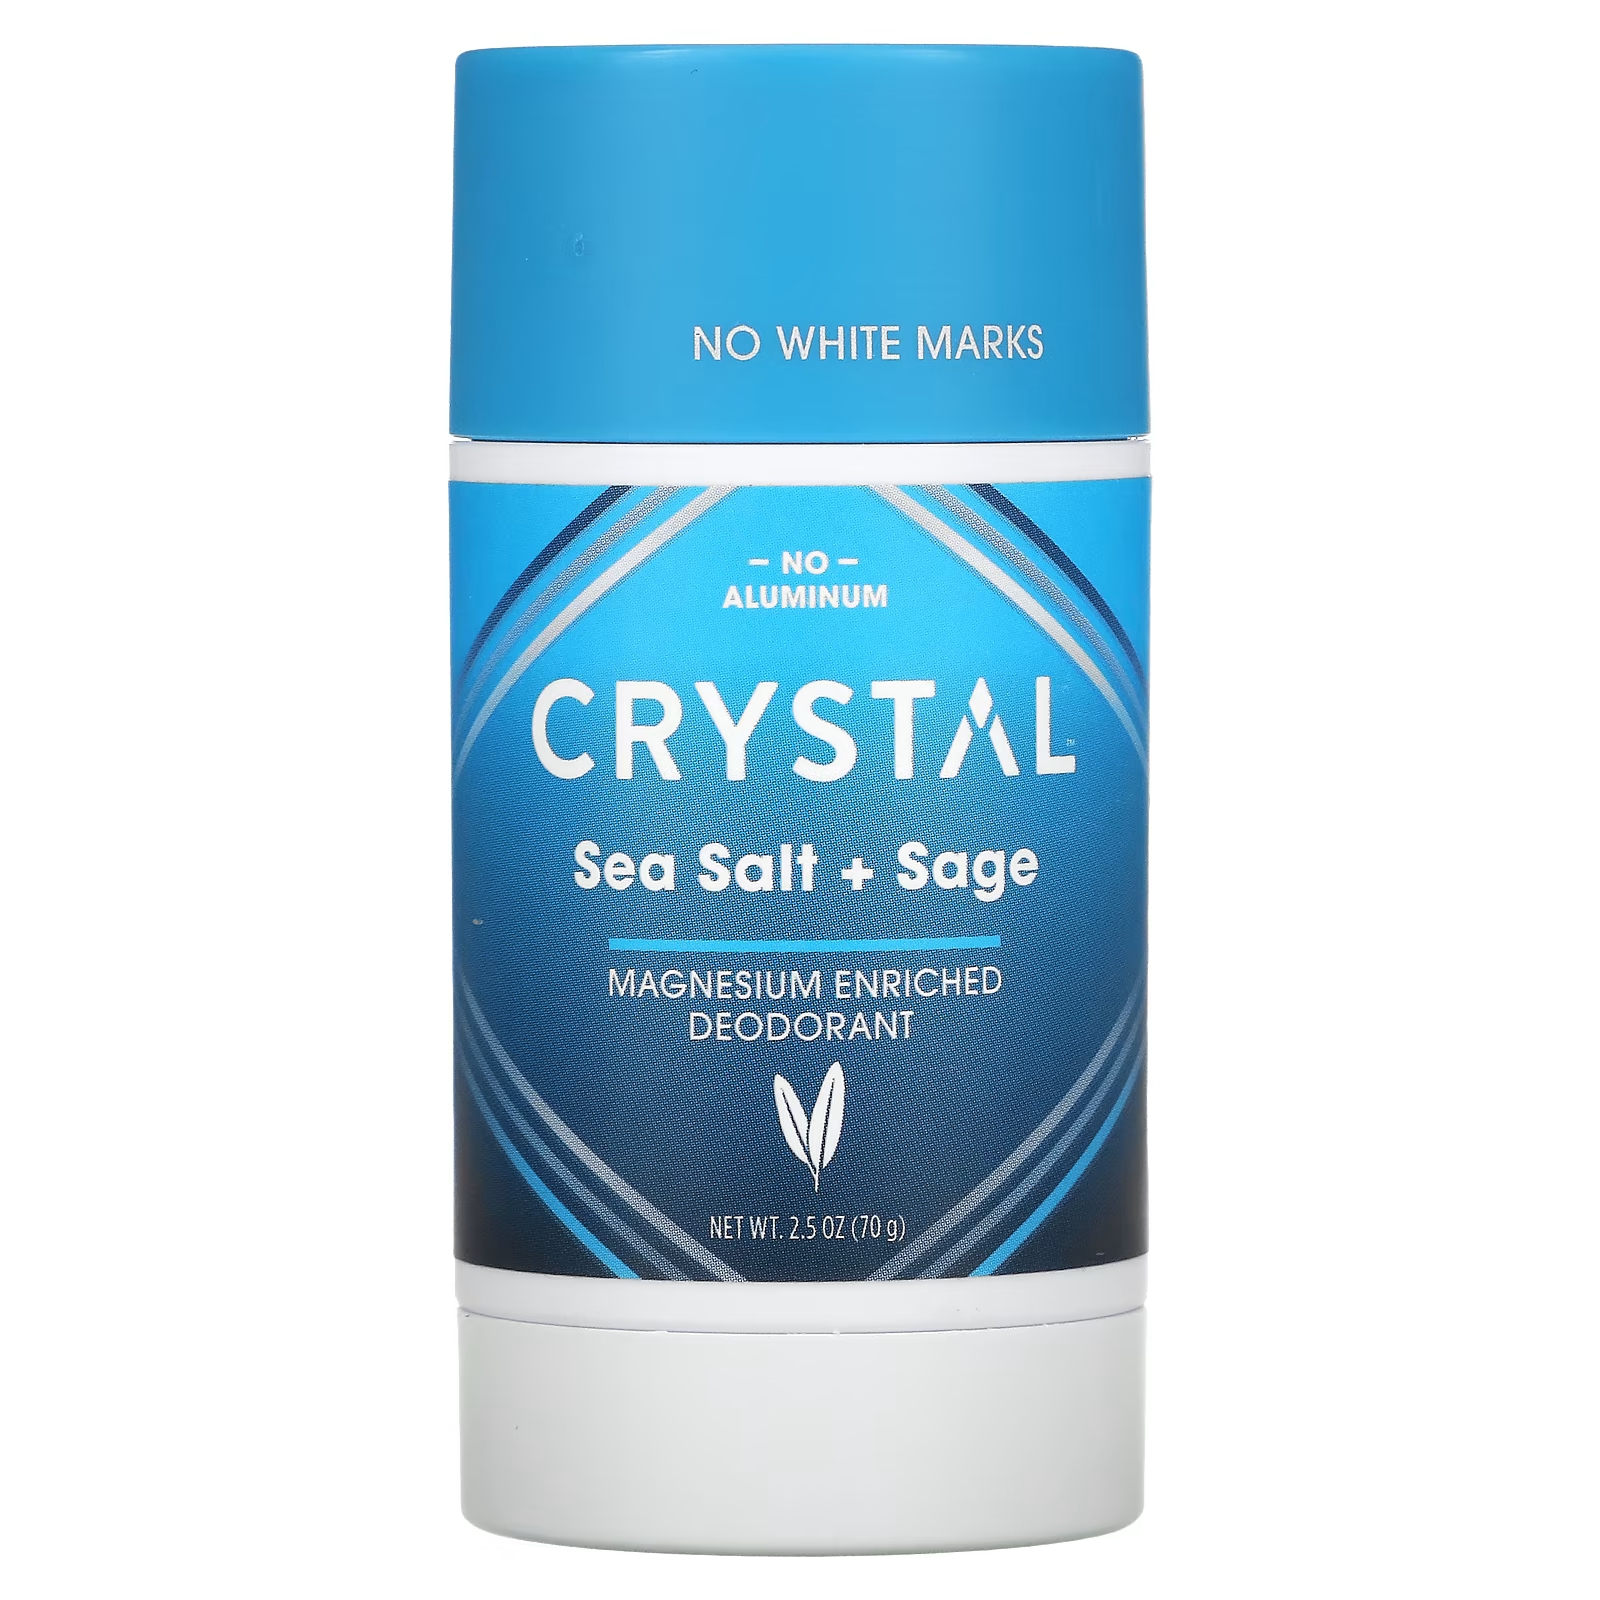 Дезодорант Crystal обогащенный магнием, морская соль + шалфей активный порошок пищевой соды 350 г heitmann pure